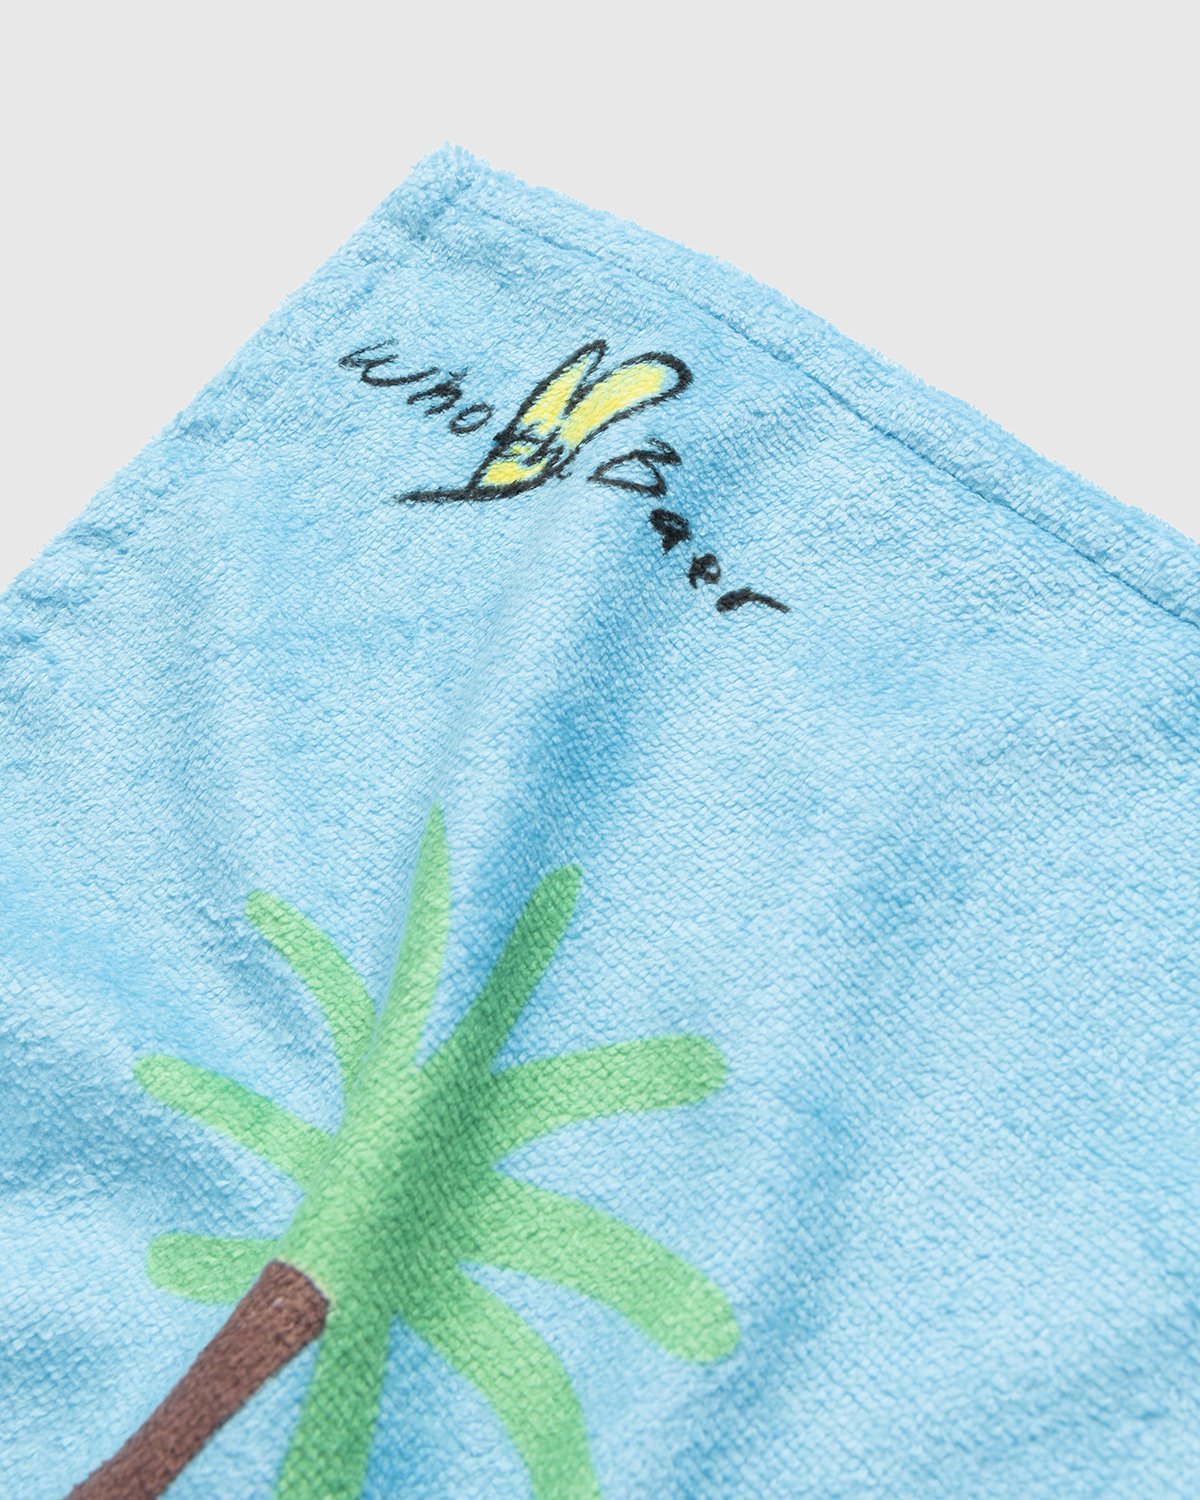 Simon Fujiwara x Highsnobiety - Who The Baer Beach Towel - Lifestyle - Multi - Image 5